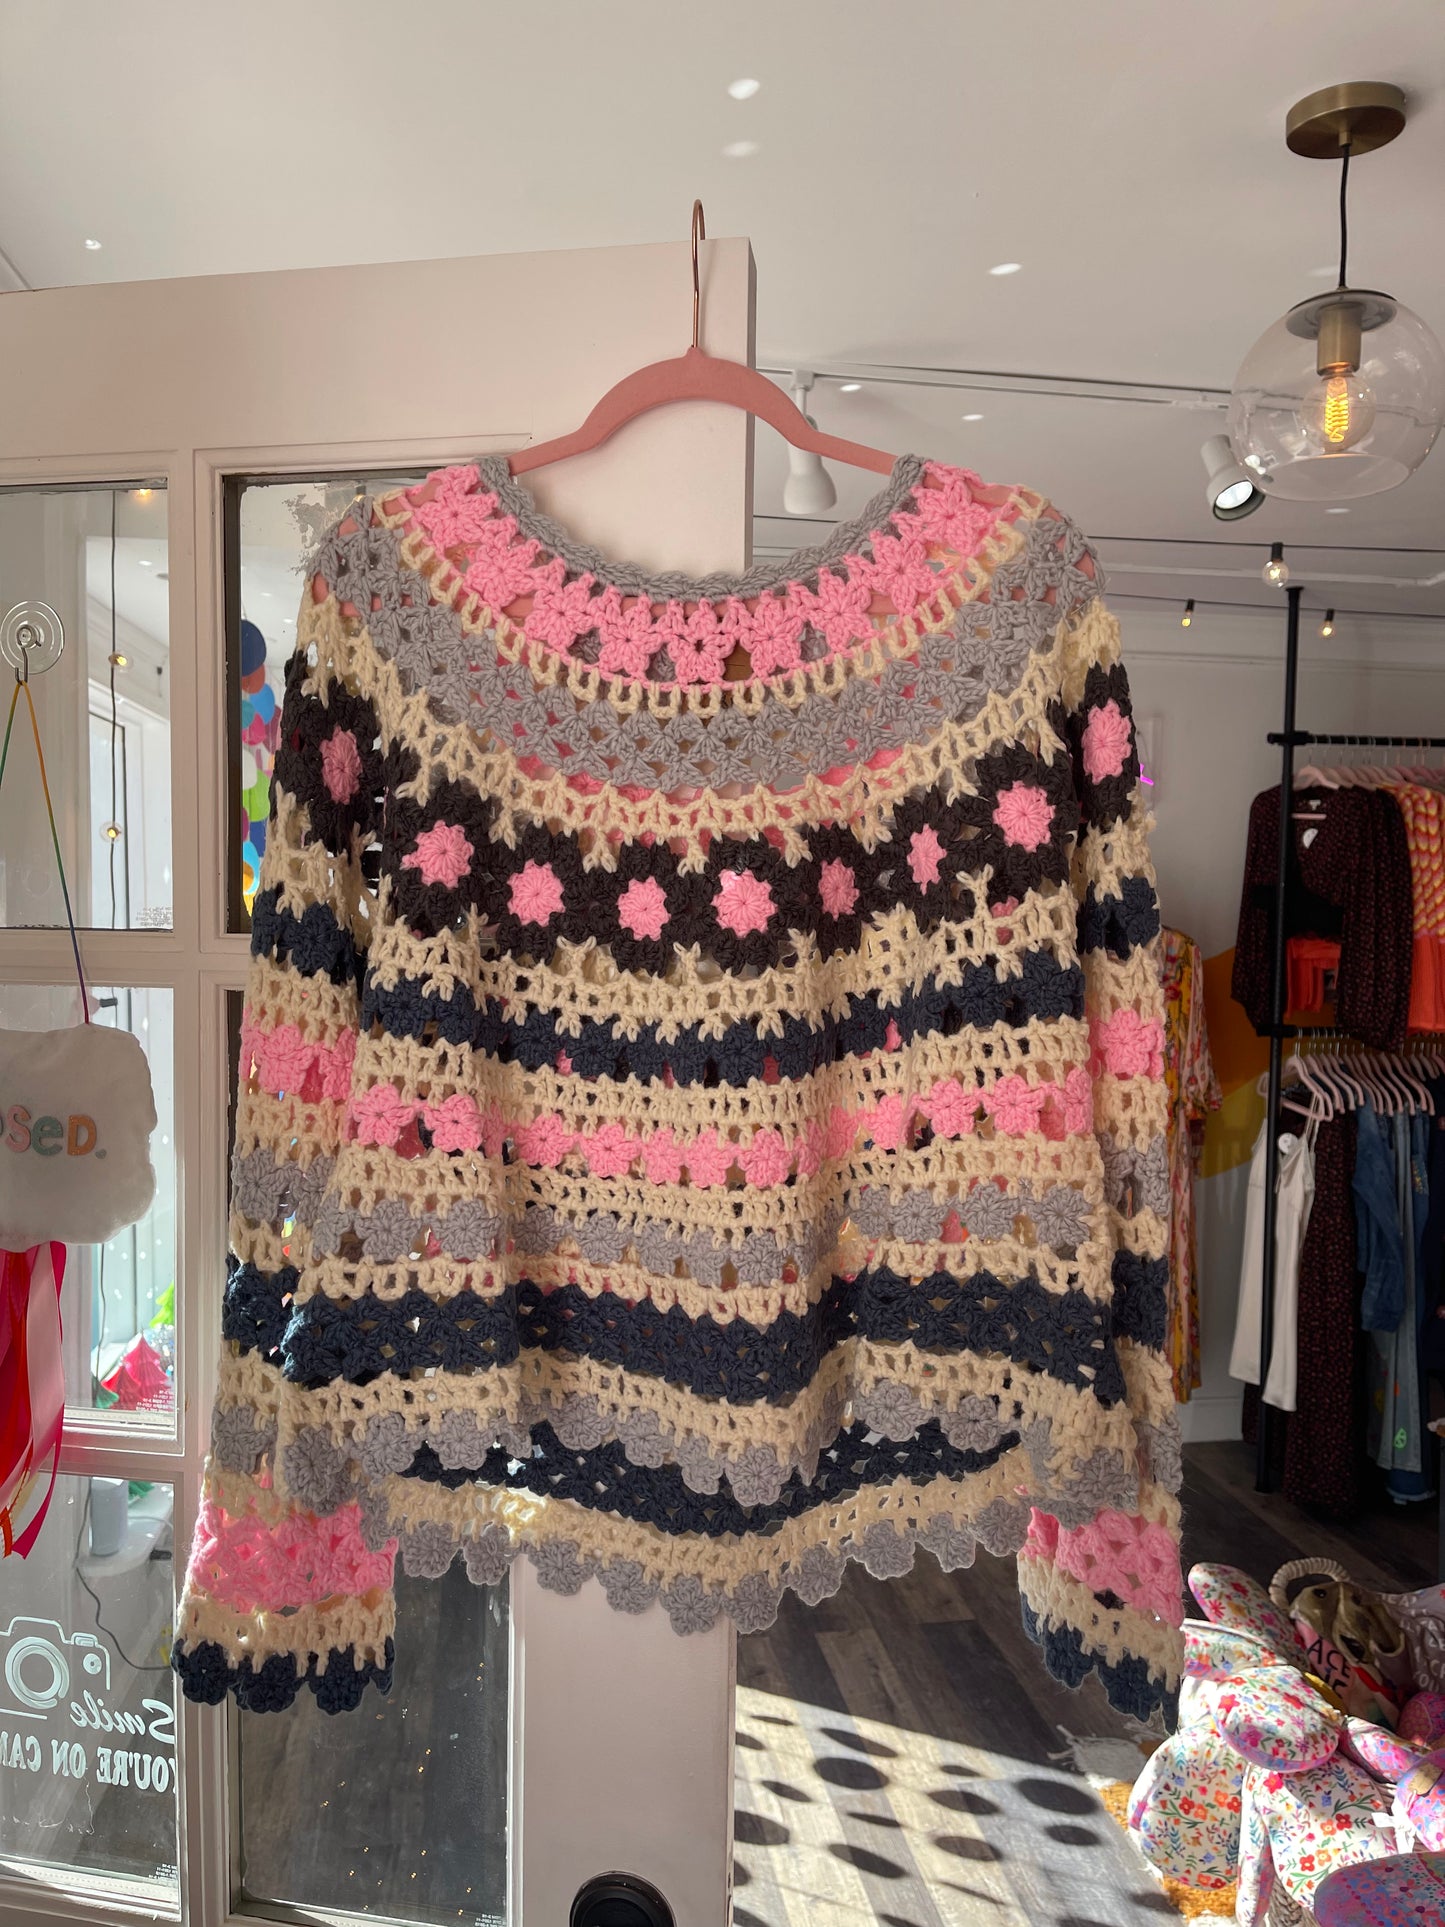 Moondance Crochet Sweater | Cotton Candy